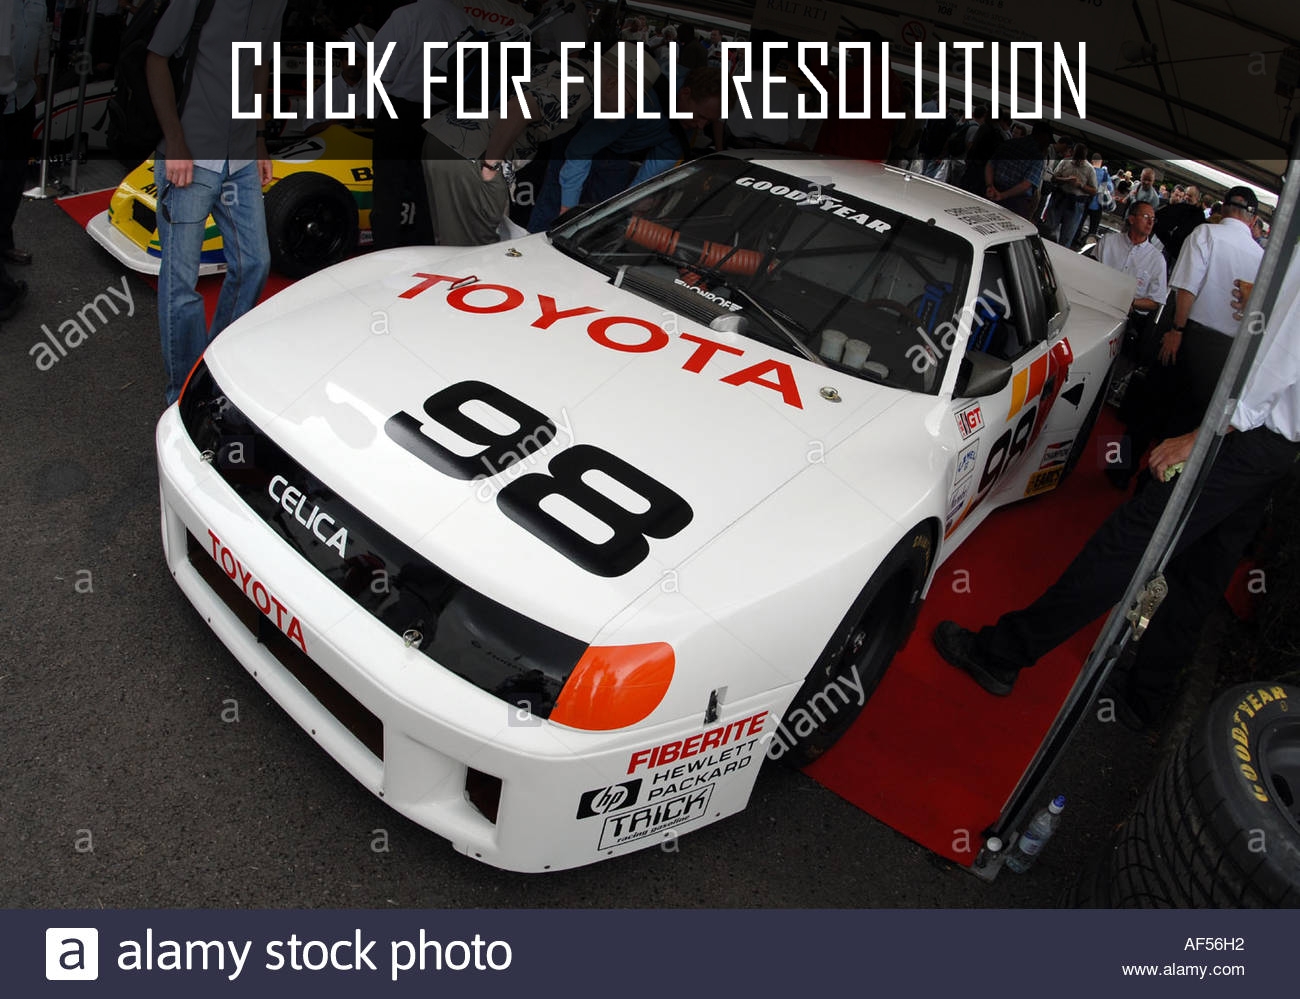 Toyota Celica Race Car